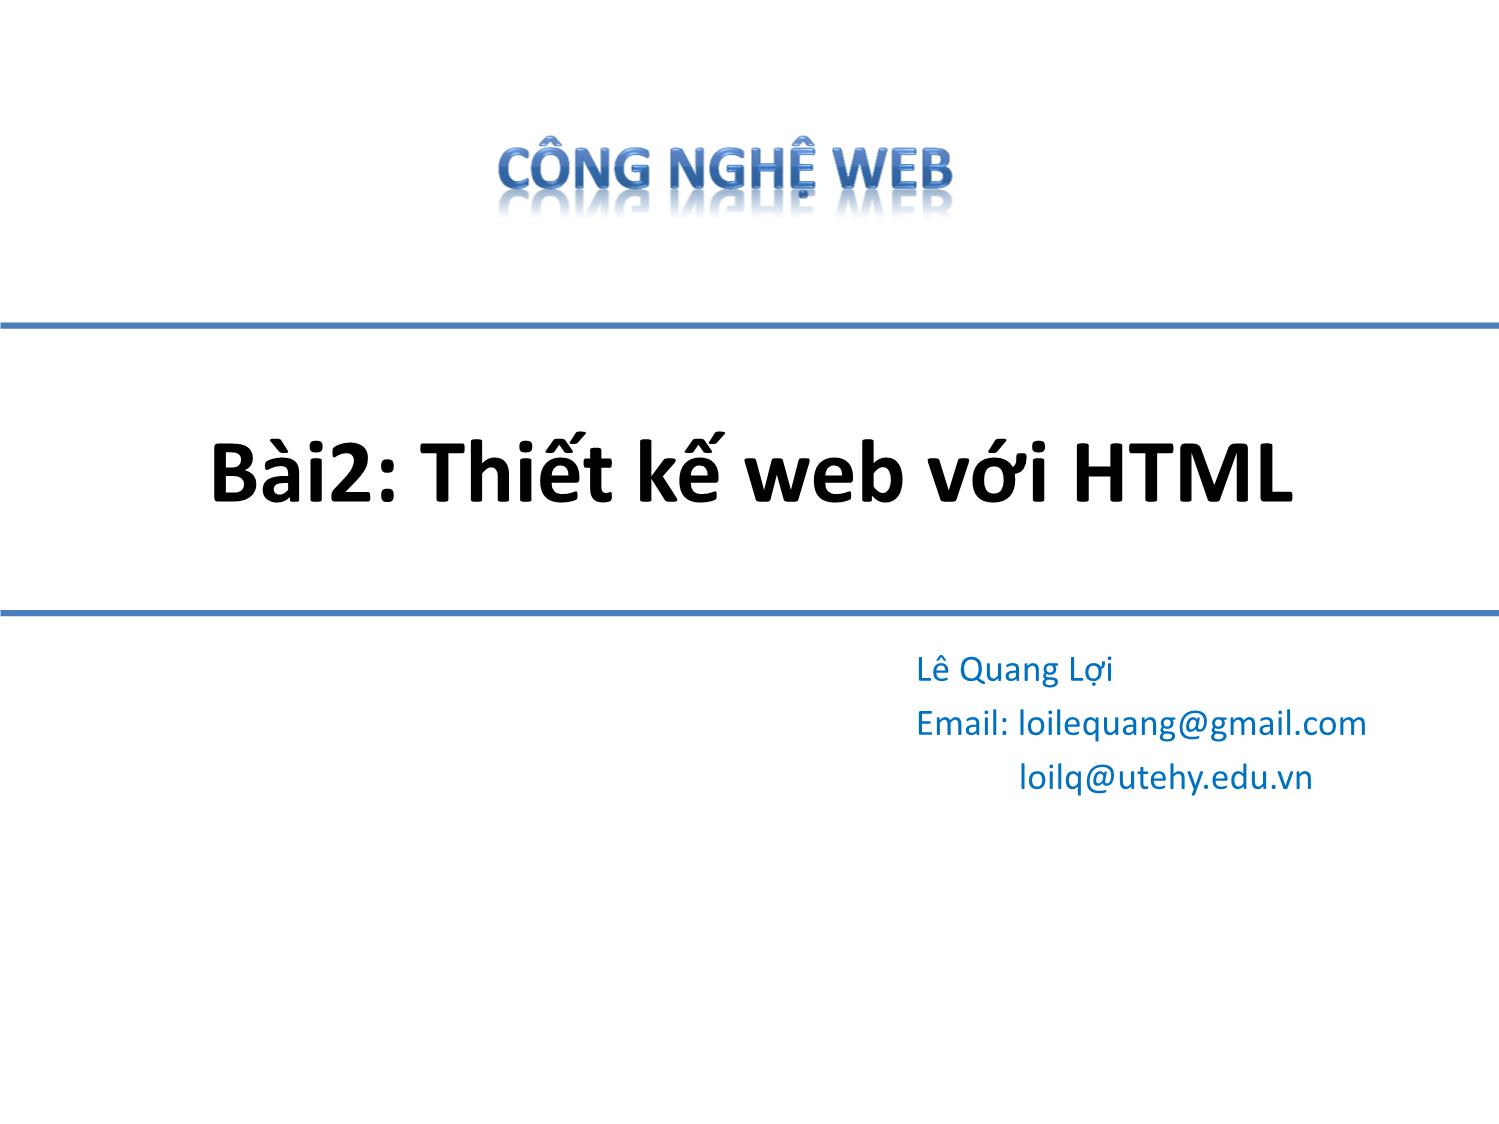 Bài giảng Công nghệ Web - Bài 2: Thiết kế web với HTML - Lê Quang Lợi trang 1